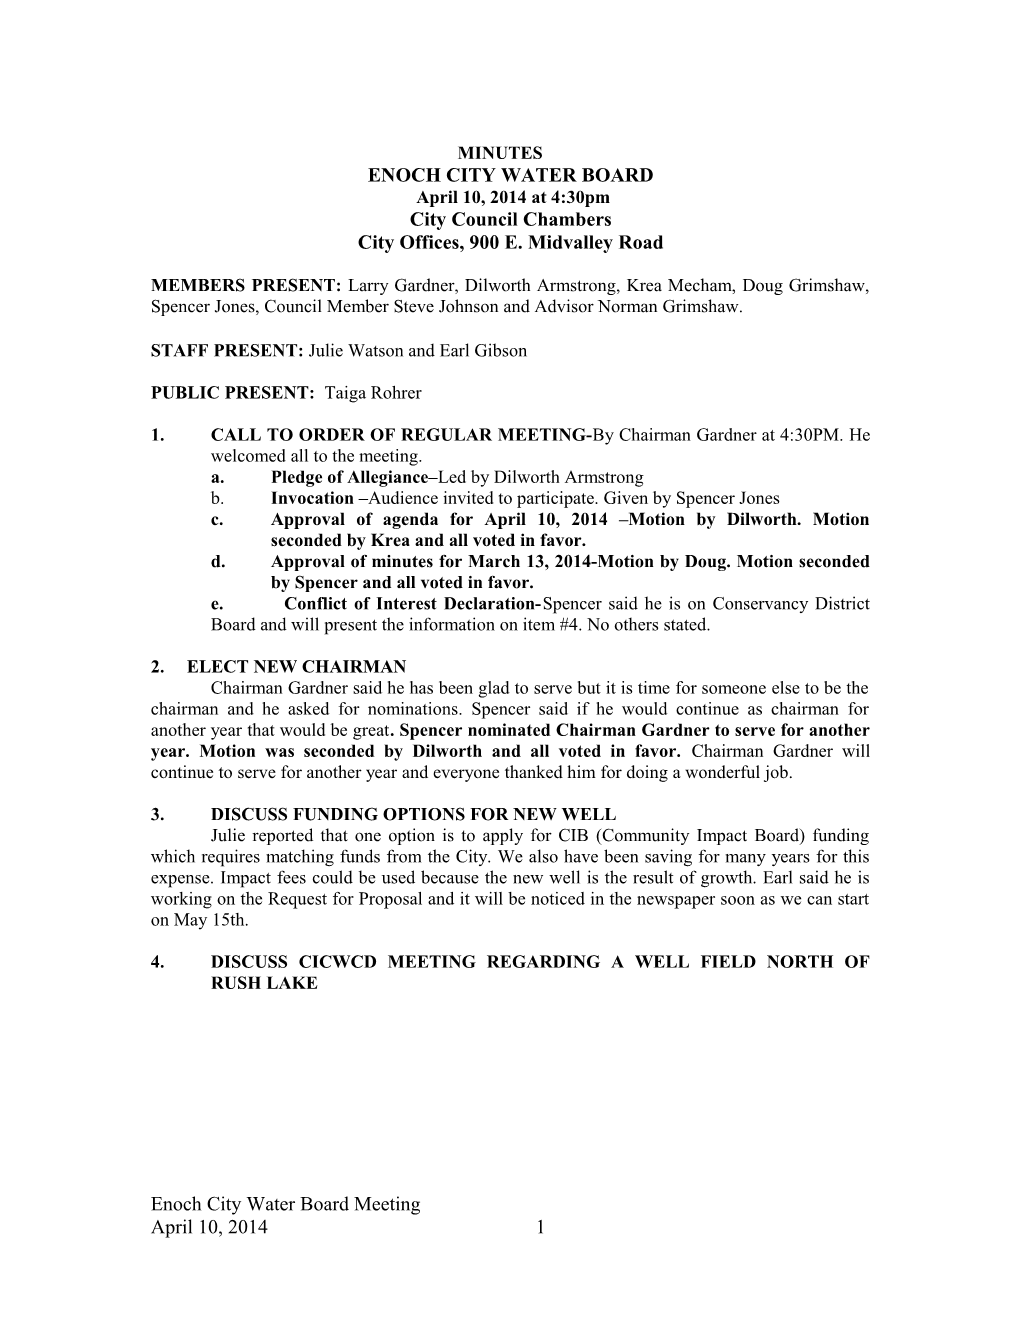 Enoch City Council Notice and Agenda